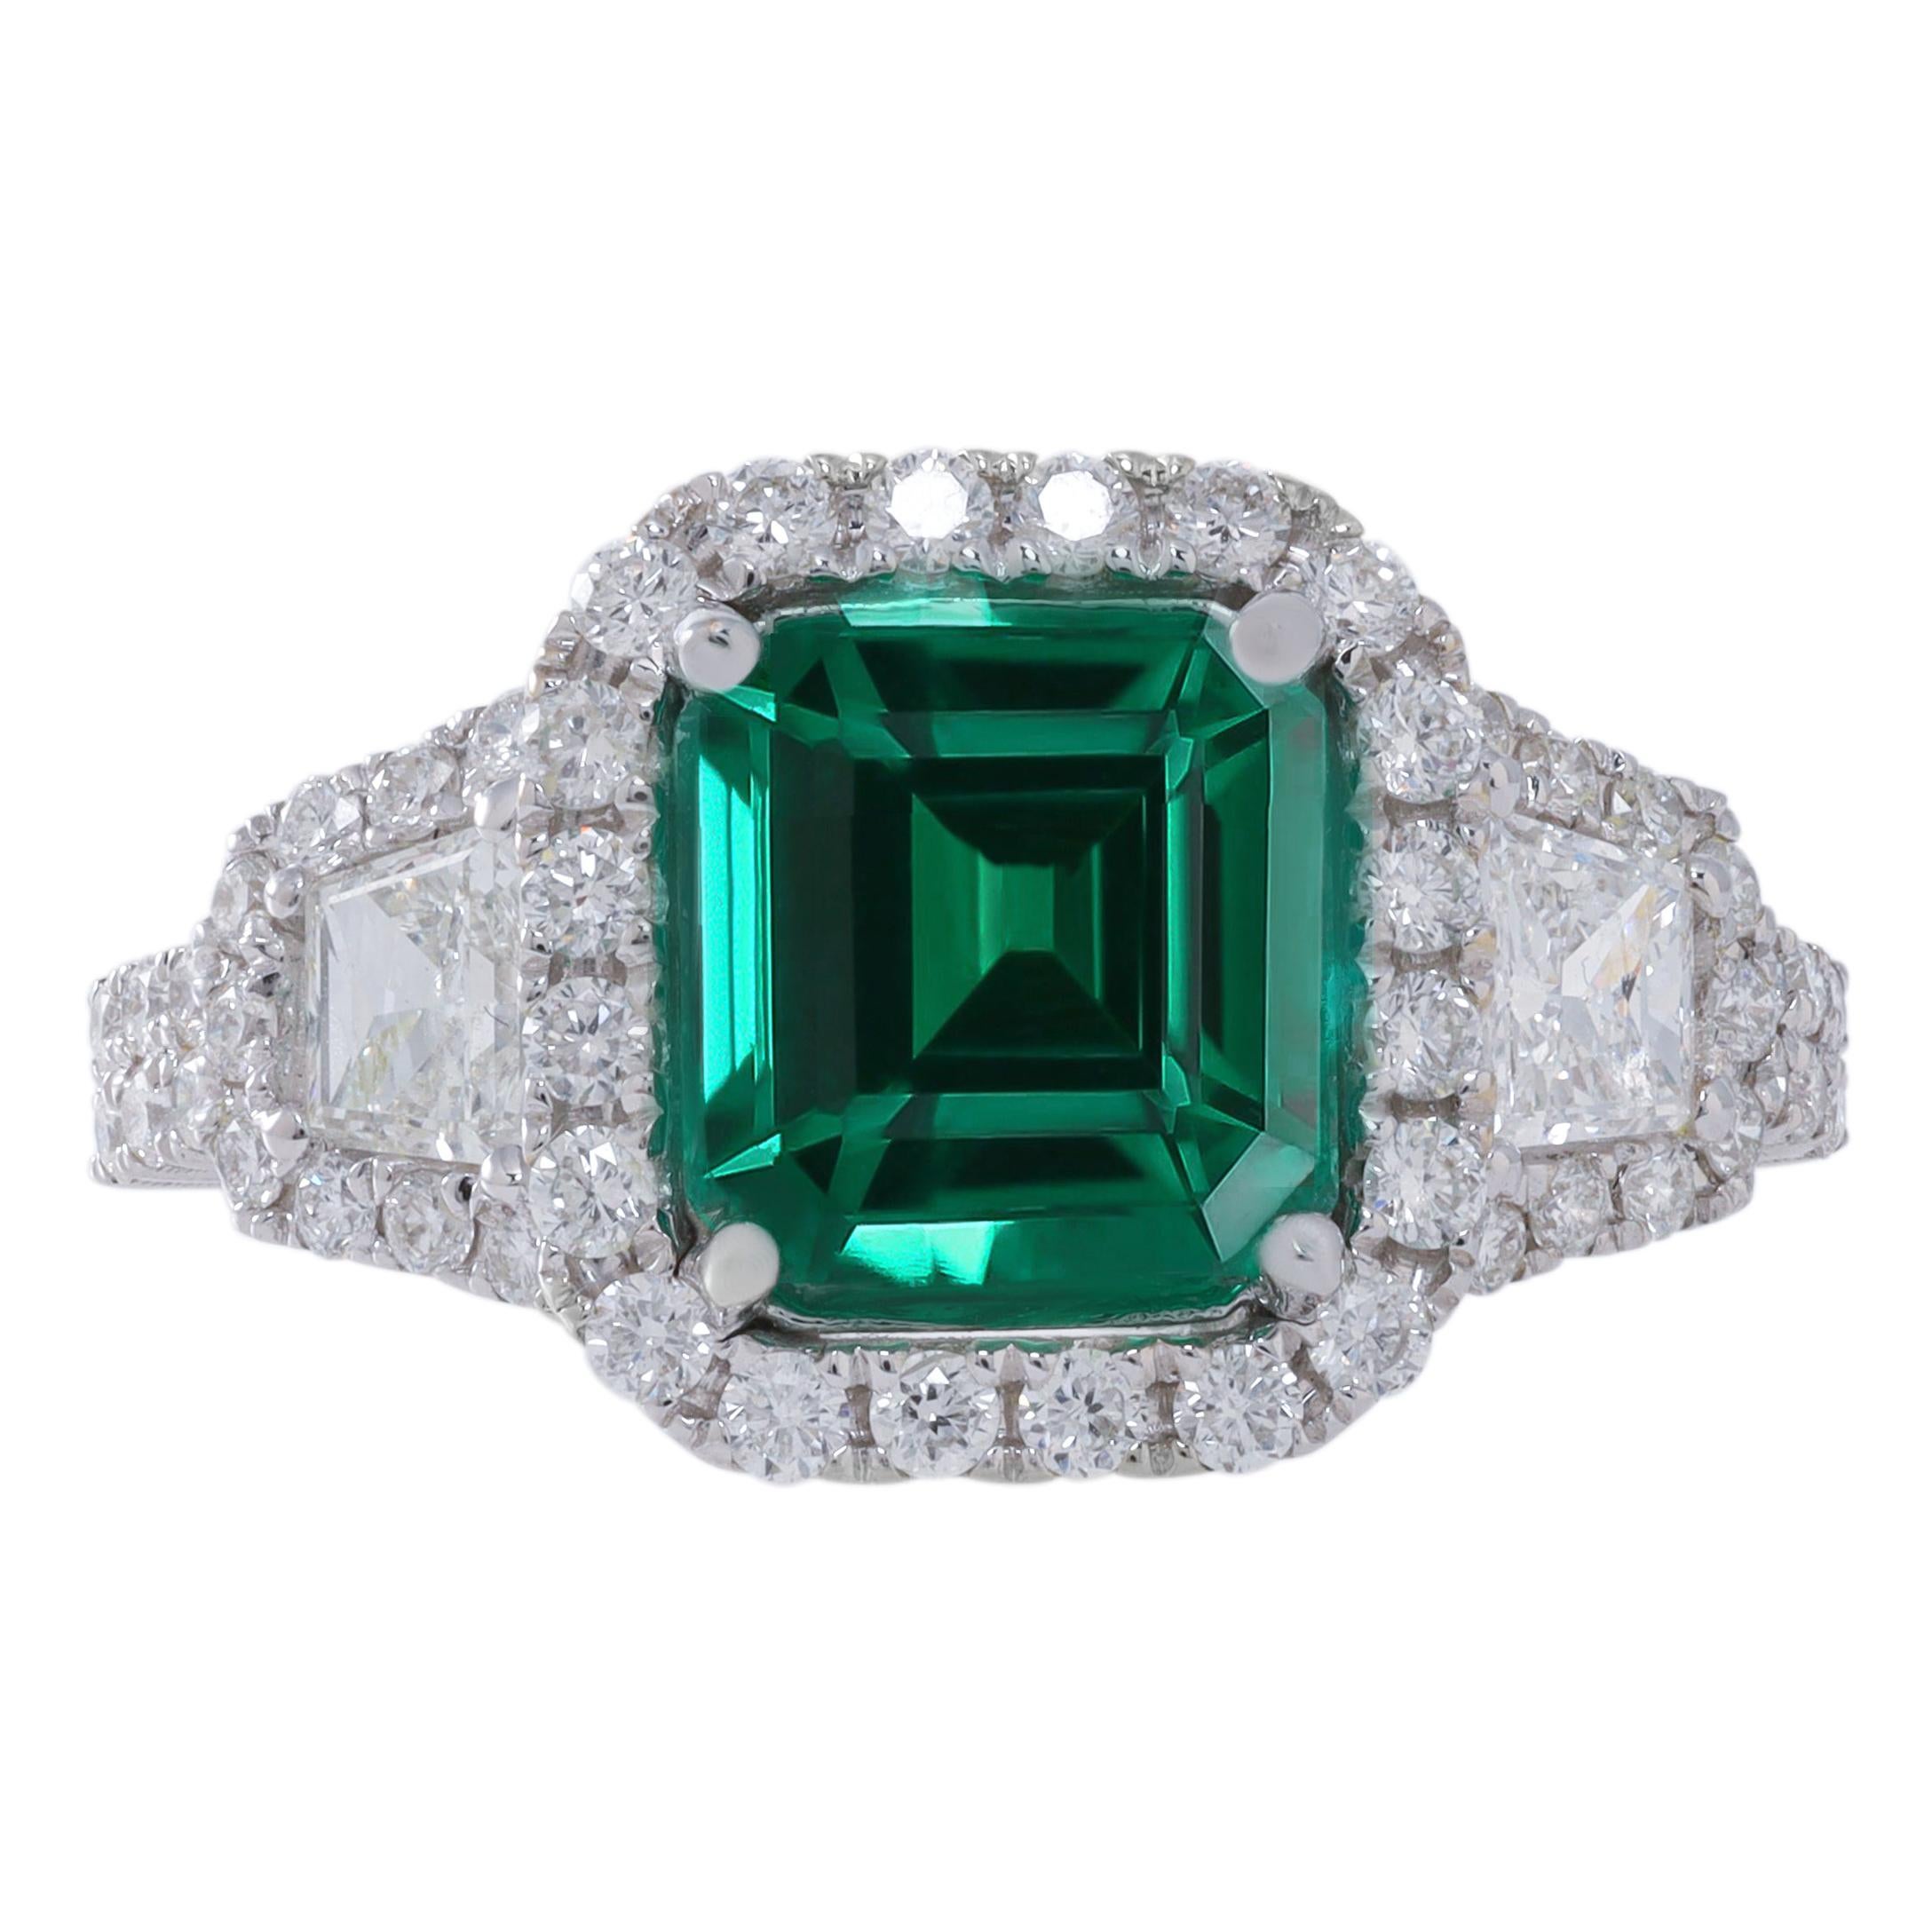 18k Wg Ring Diamond with 0.59ct Trp Diamond and Emerald 2.15ct